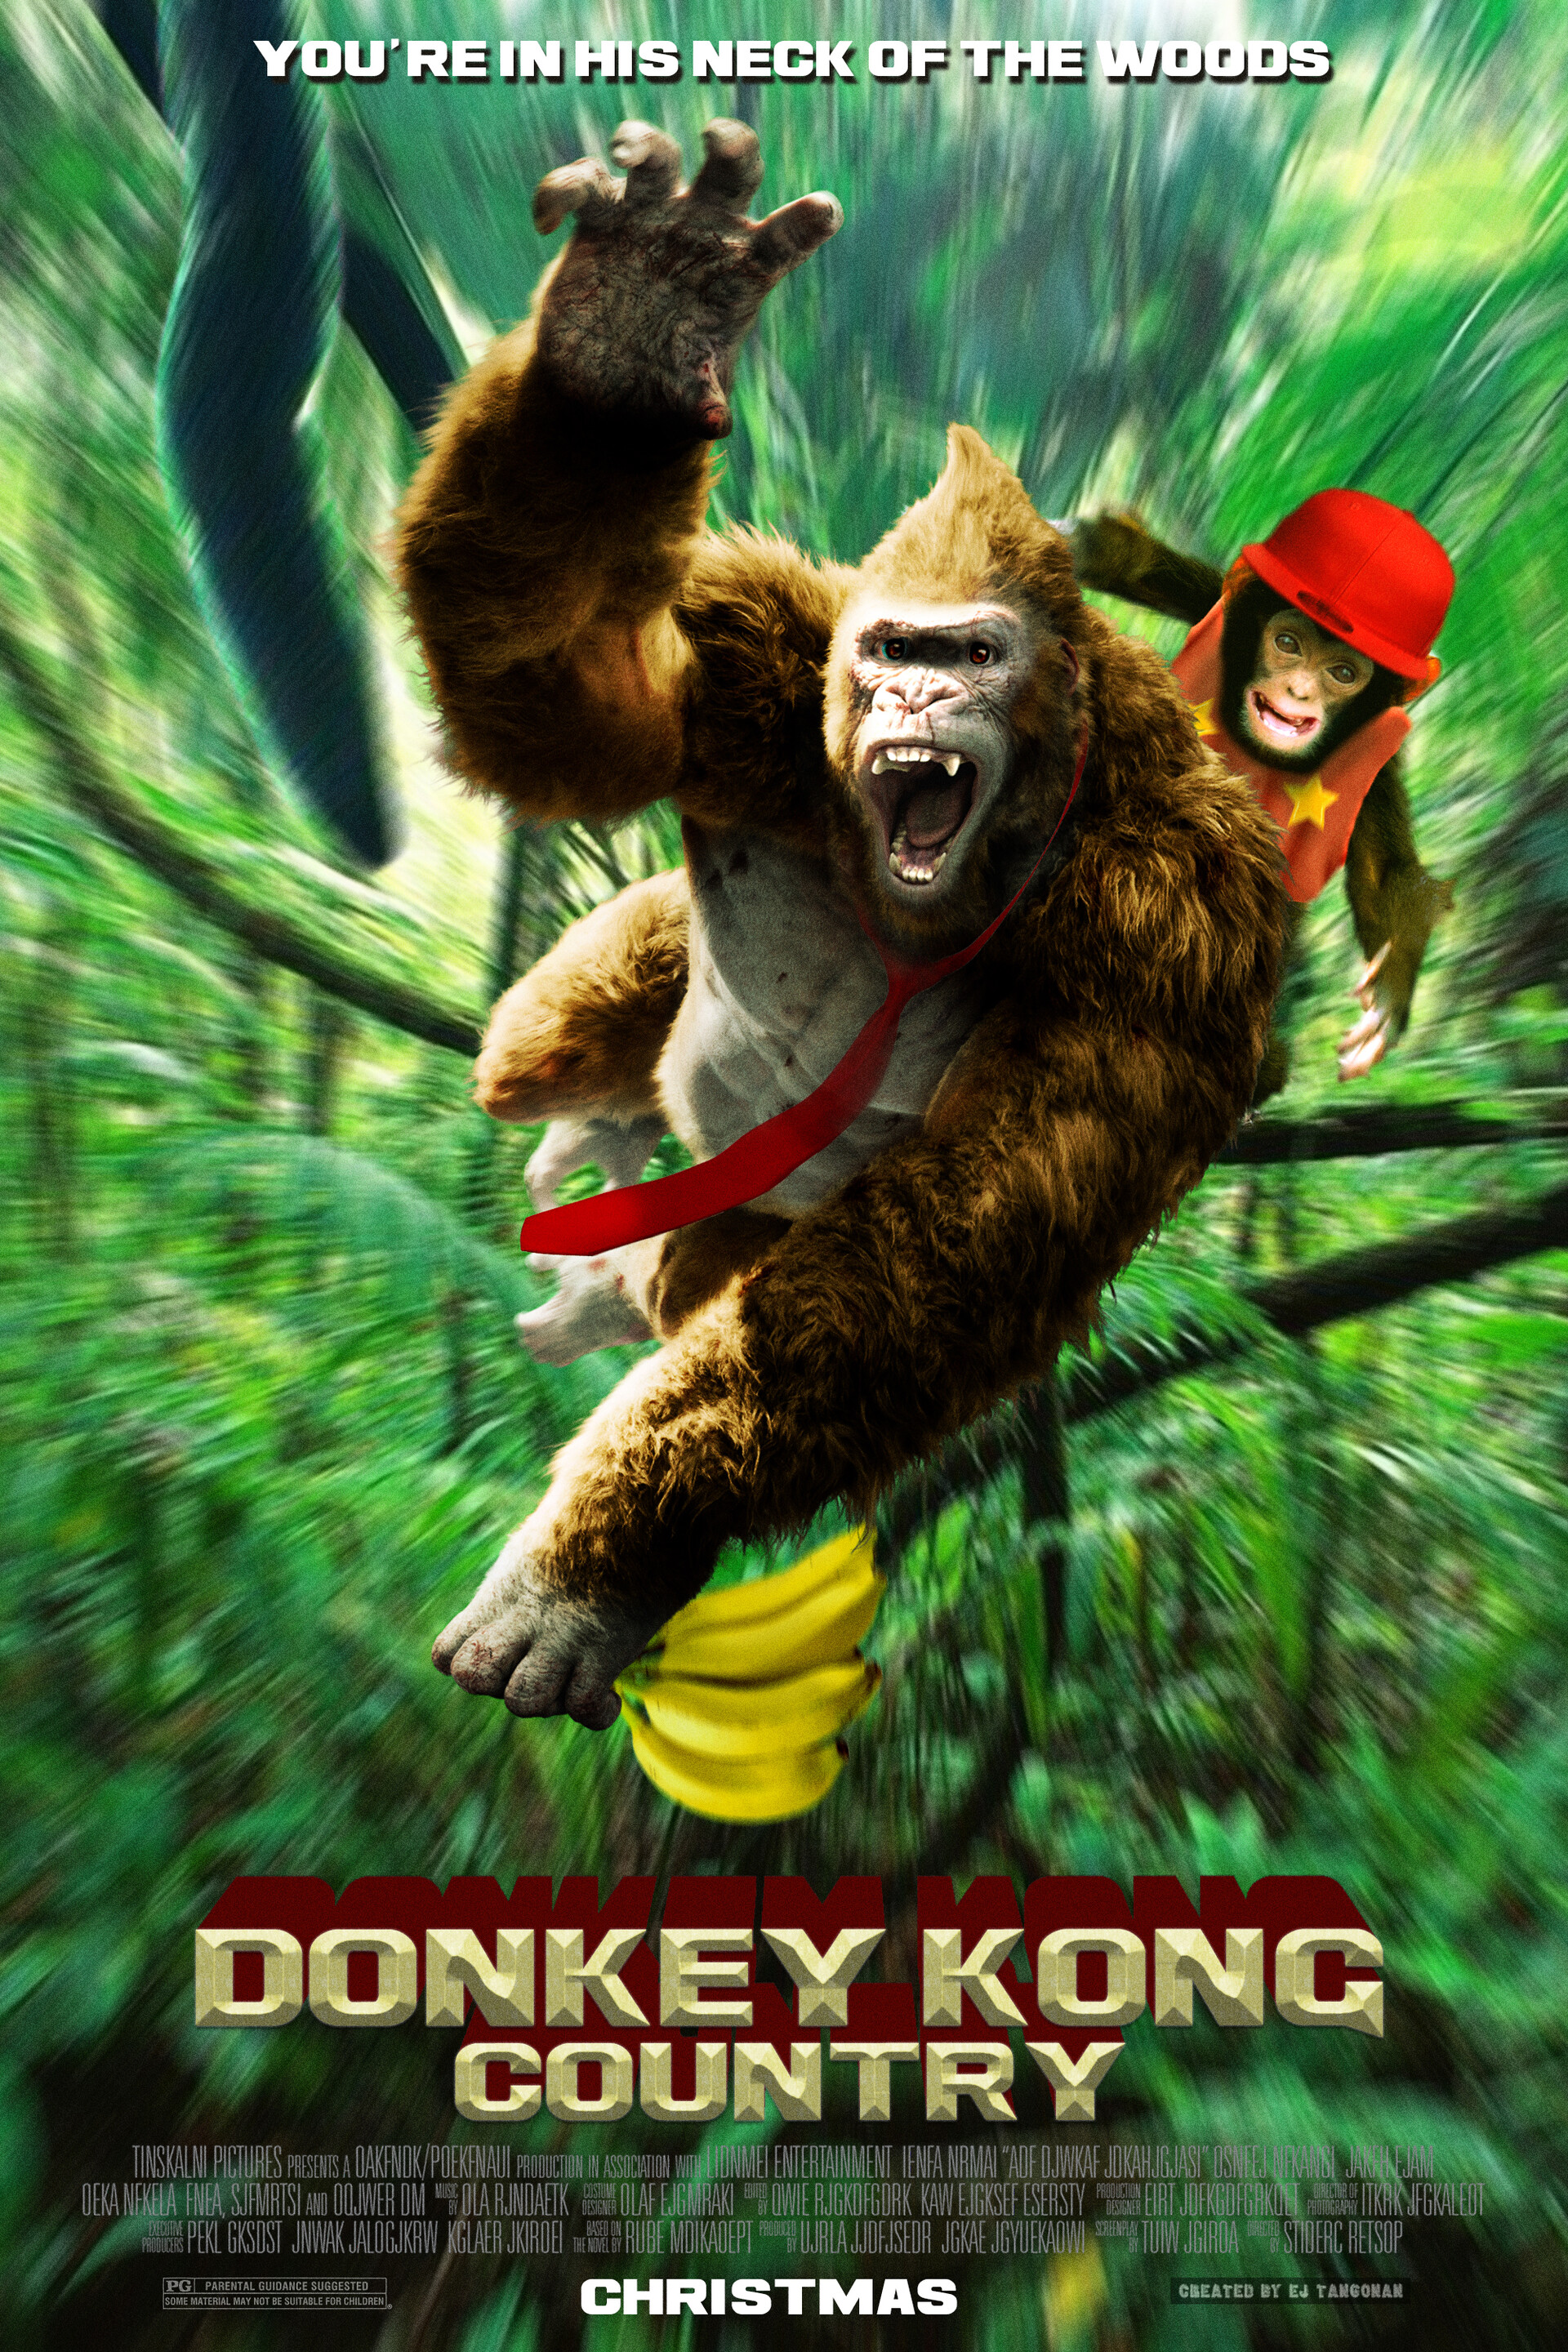 e-j-tangonan-donkey-kong-country-poster-copy.jpg